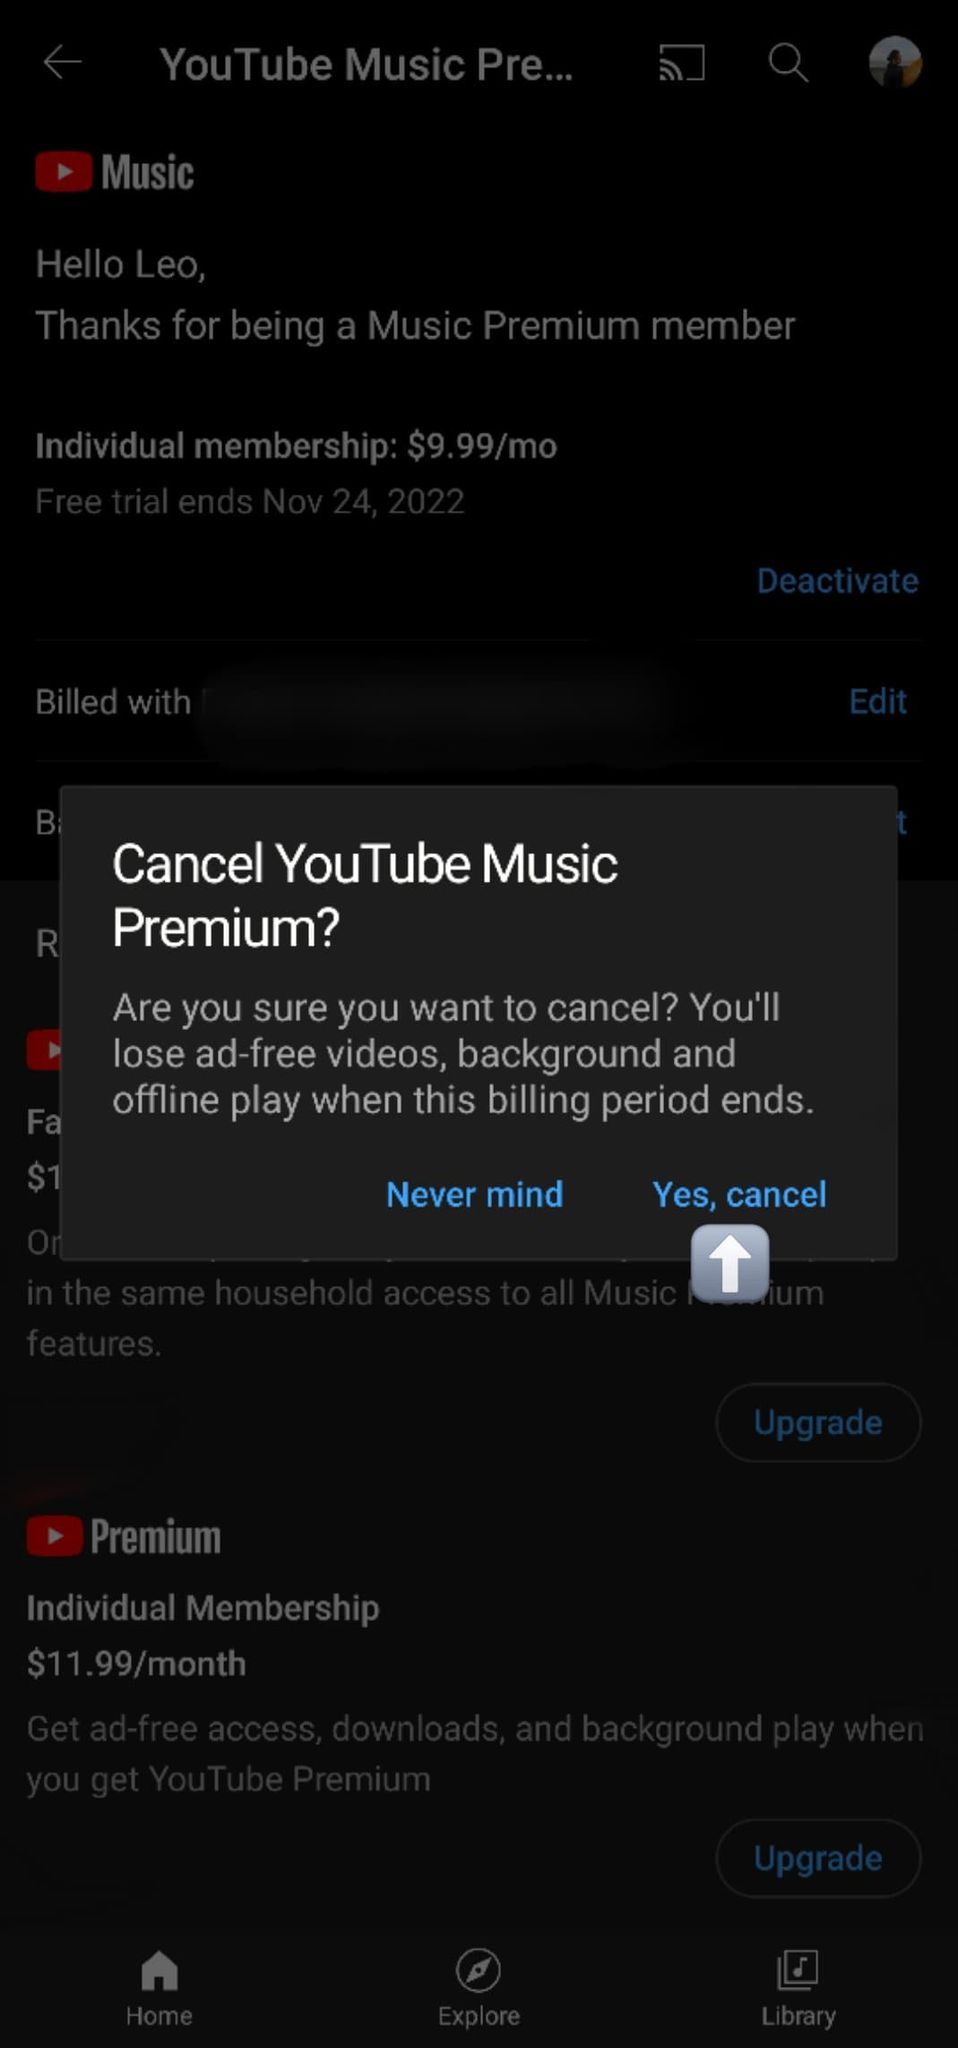 O pop-up de cancelamento final que pergunta 'Cancelar YouTube Music Premium?'  com uma seta branca em uma caixa cinza apontando para Sim, cancelar no canto inferior direito do pop-up no aplicativo YouTube Music para Android